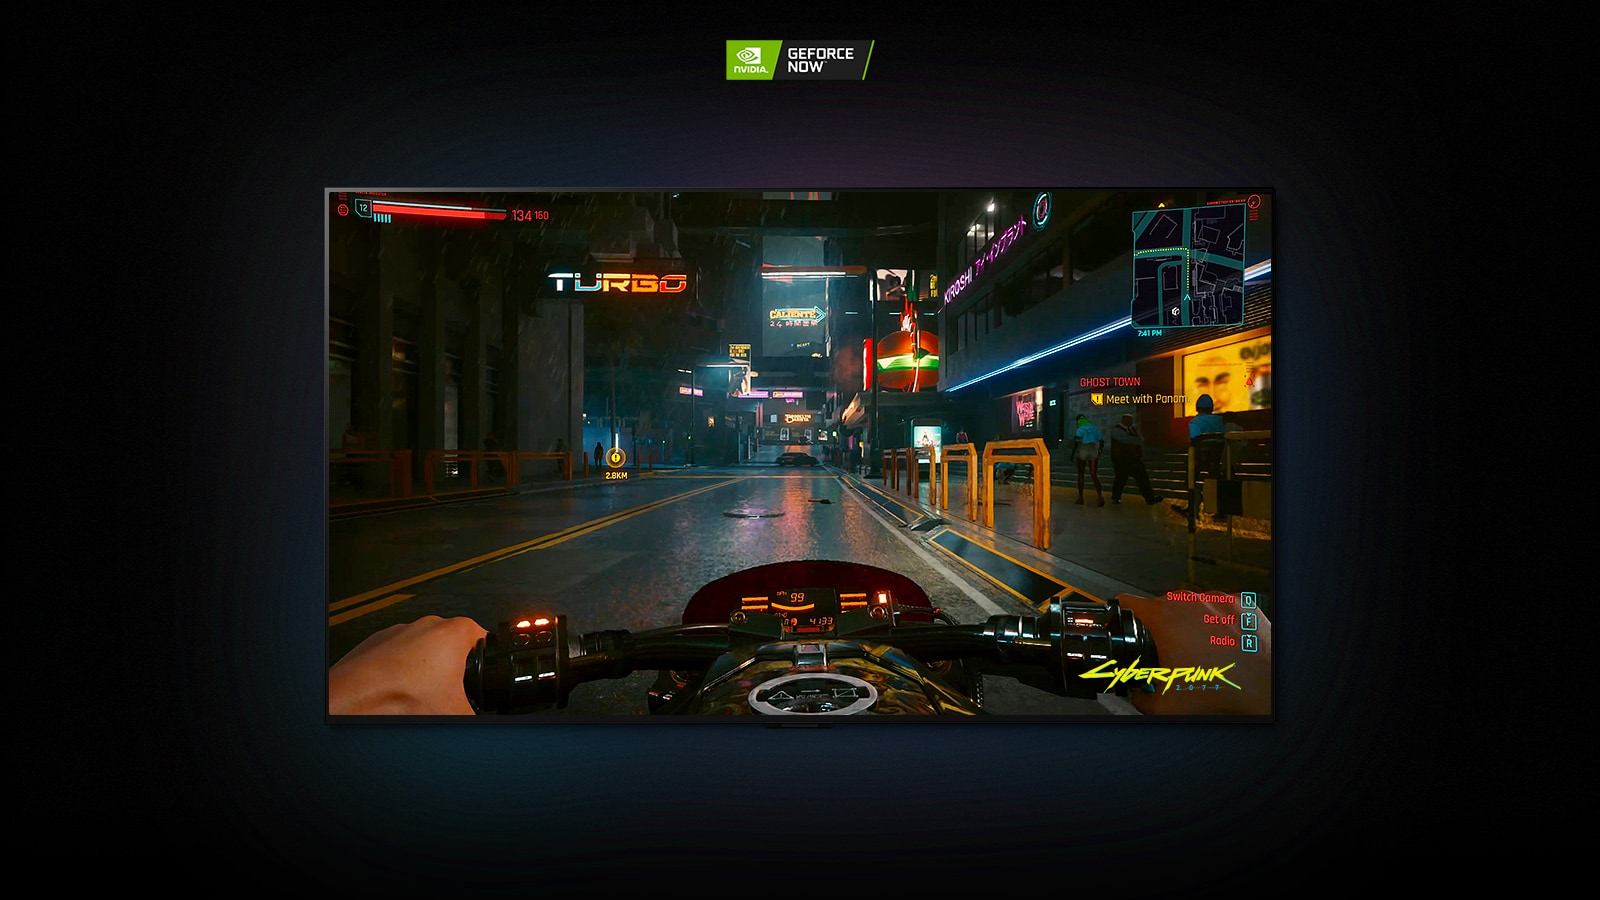 U sceni iz Cyberpunk 2077 koja se prikazuje na LG OLED ekranu, igrač se vozi na motociklu kroz ulicu osvetljenu neonskim svetlima.